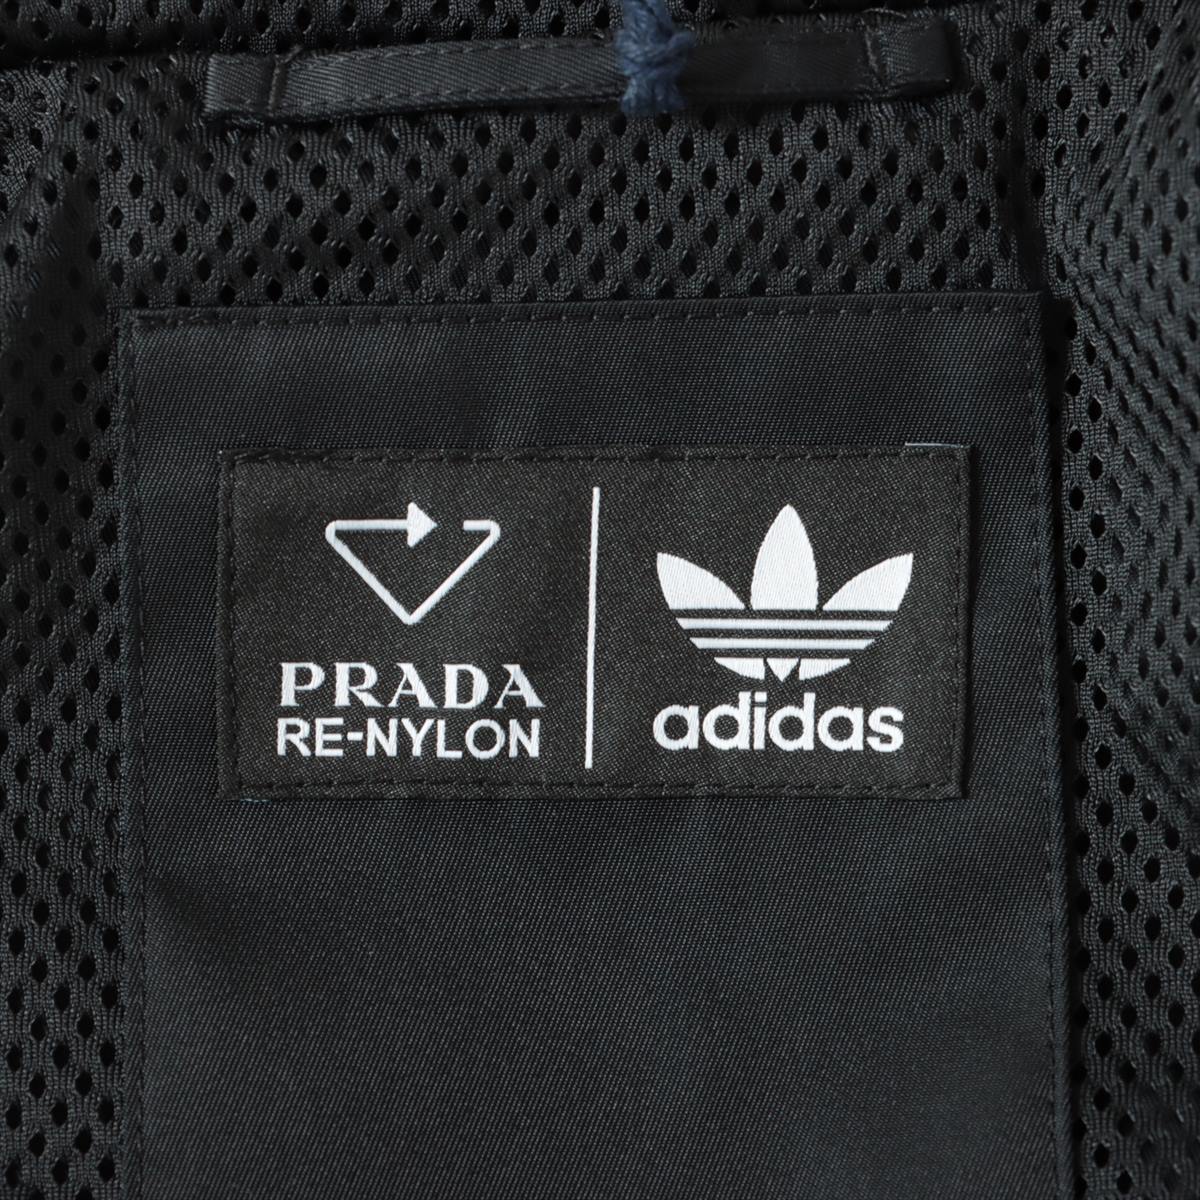 Prada x Adidas Re Nylon Re Nylon 21AW Nylon track jacket 42 Men's Black  SGB964